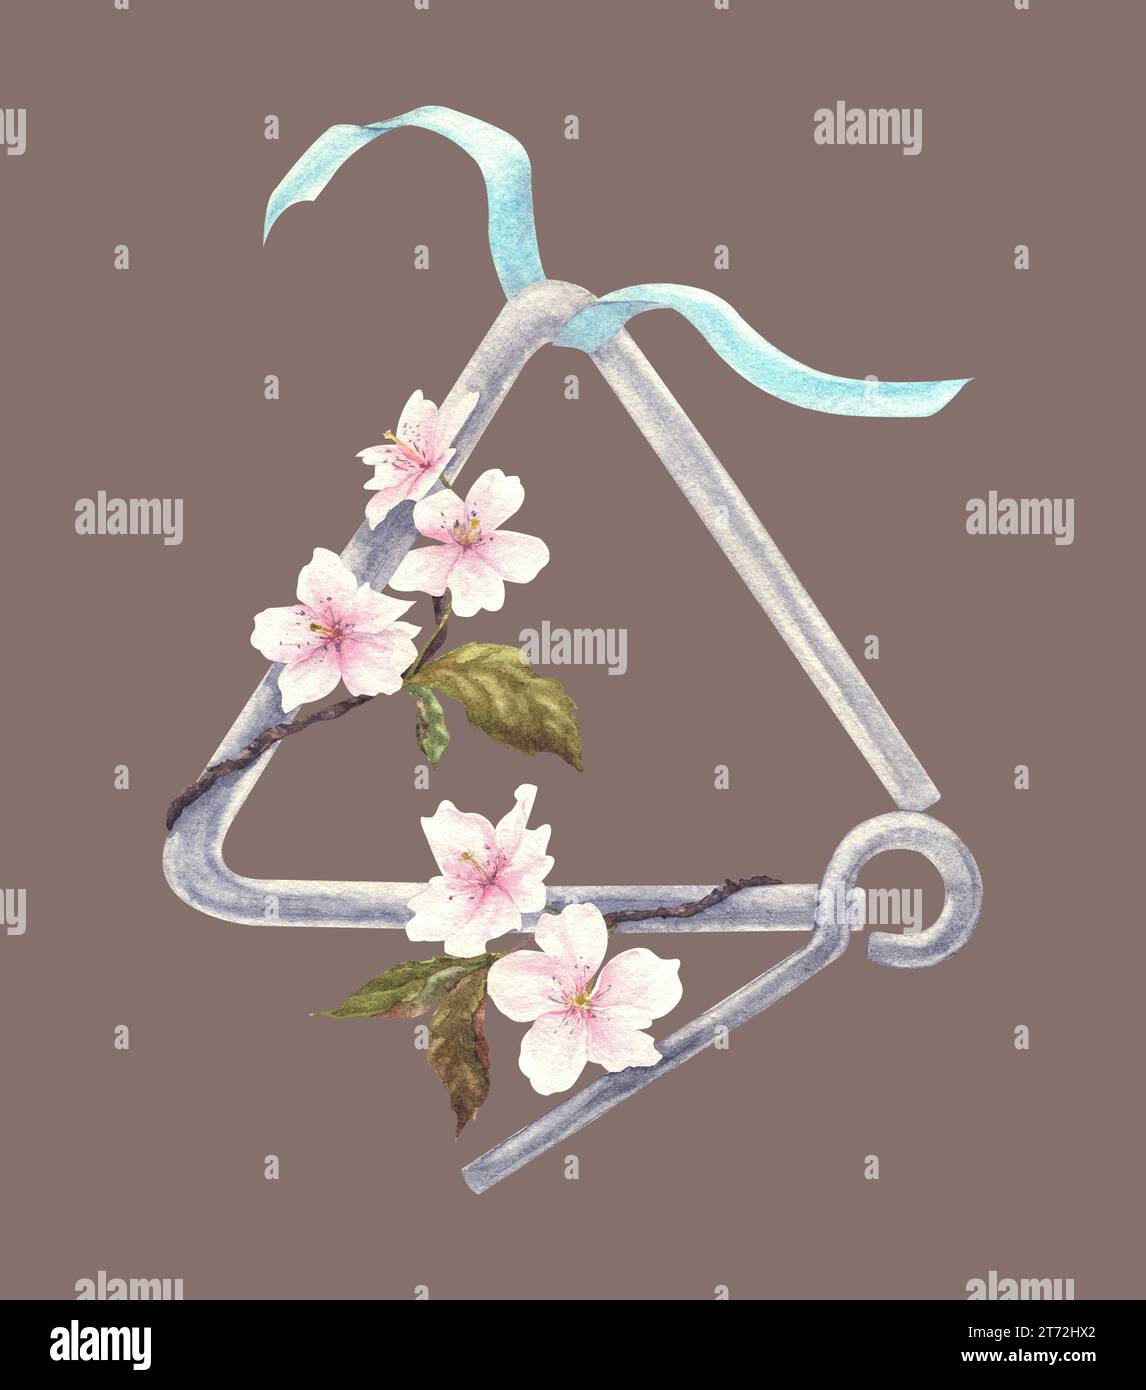 Musikalisches Dreieck mit Band und Blumen. Handgezeichnete Aquarellillustration auf isoliertem Hintergrund. Instrument zur Rhythmusbildung. Stockfoto